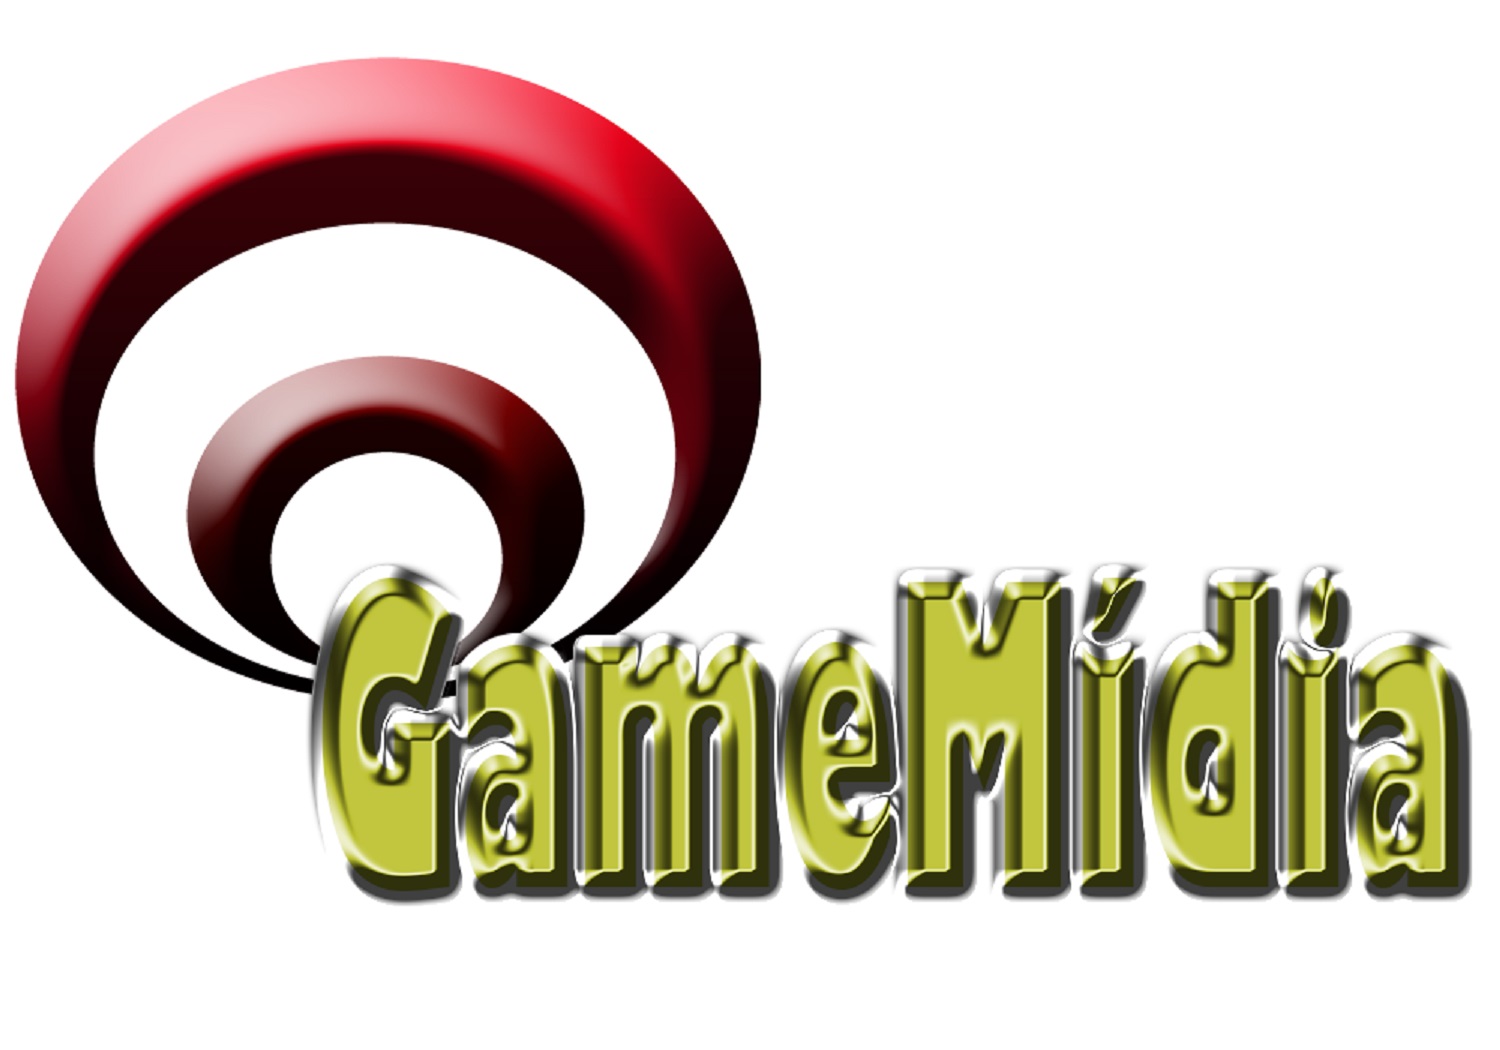 GameMidia